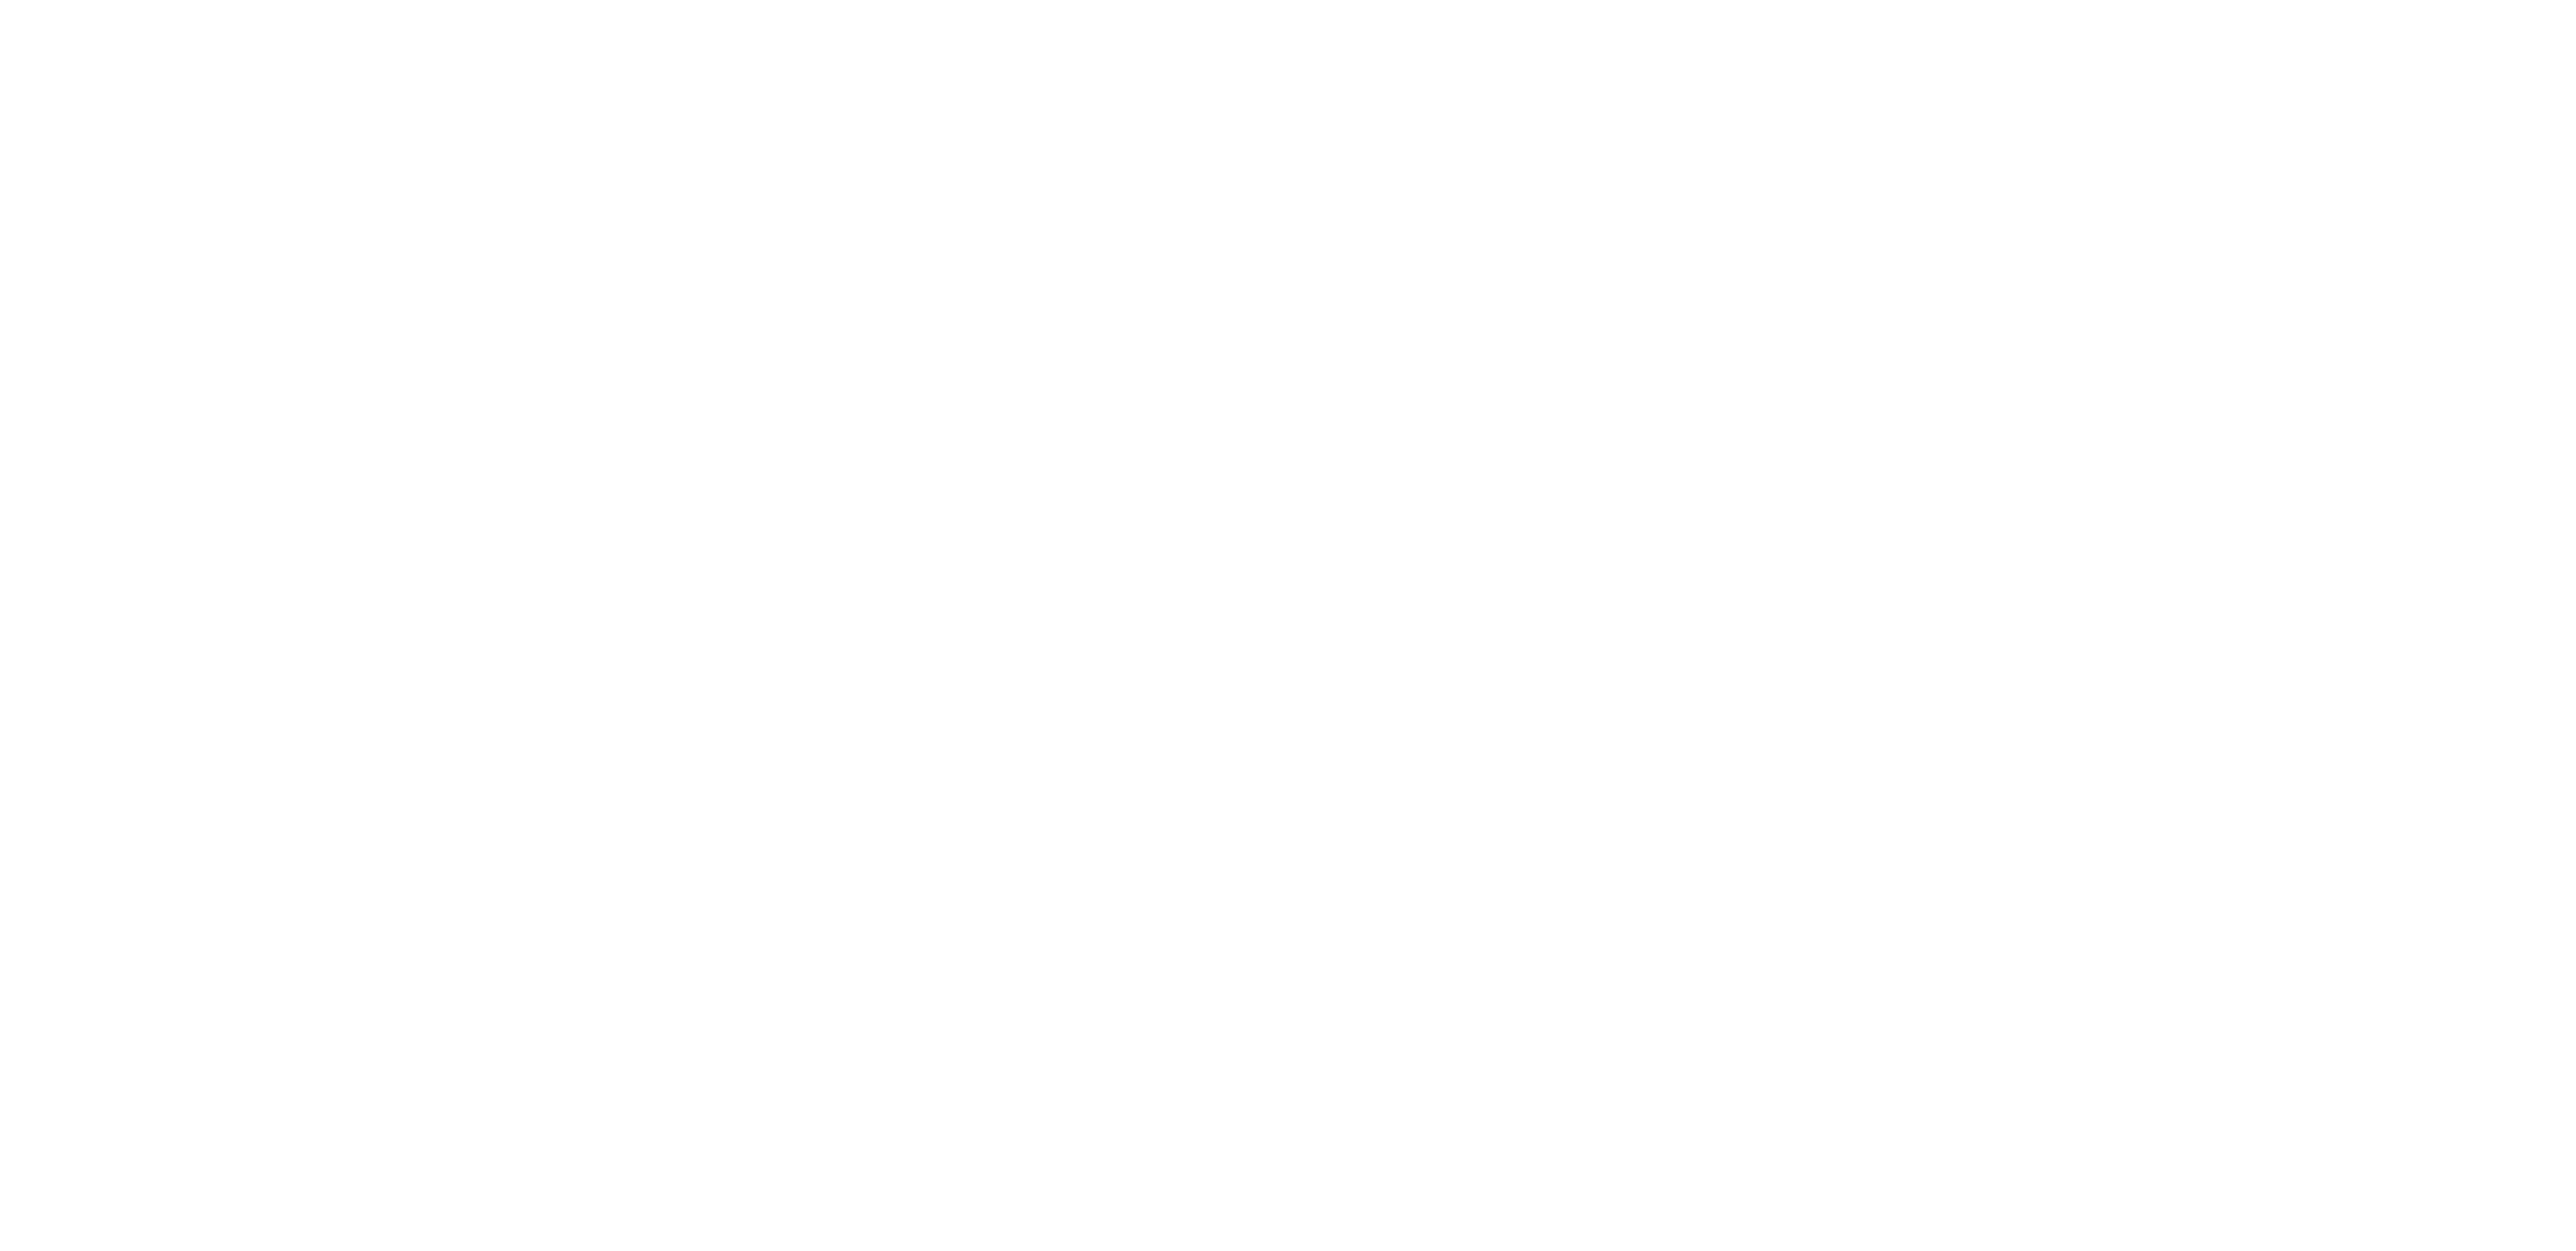 Lola Versus logo